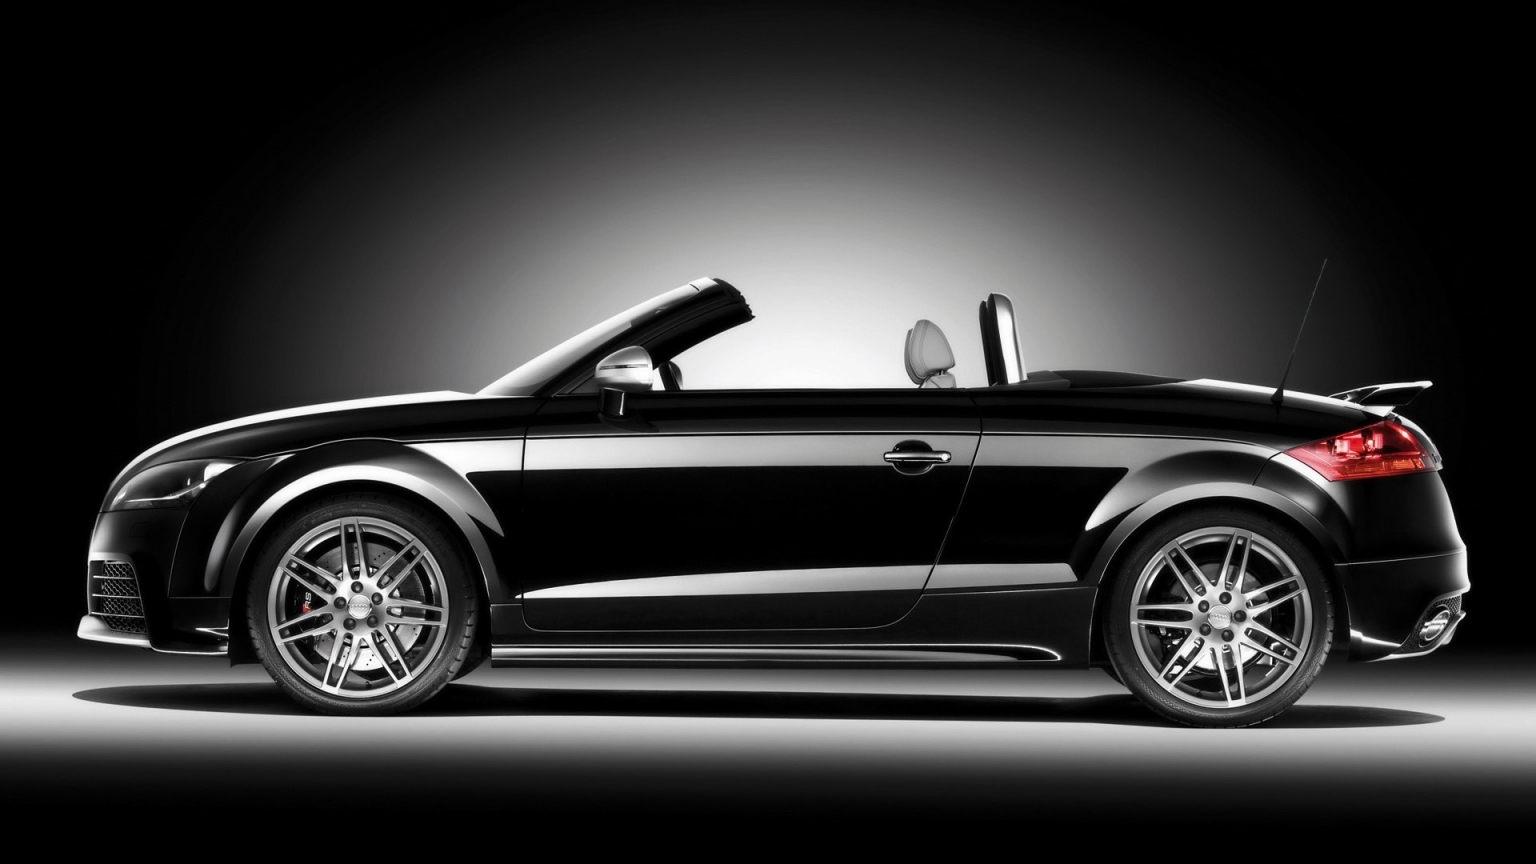 2009 Audi TT RS Roadster Black Side for 1536 x 864 HDTV resolution